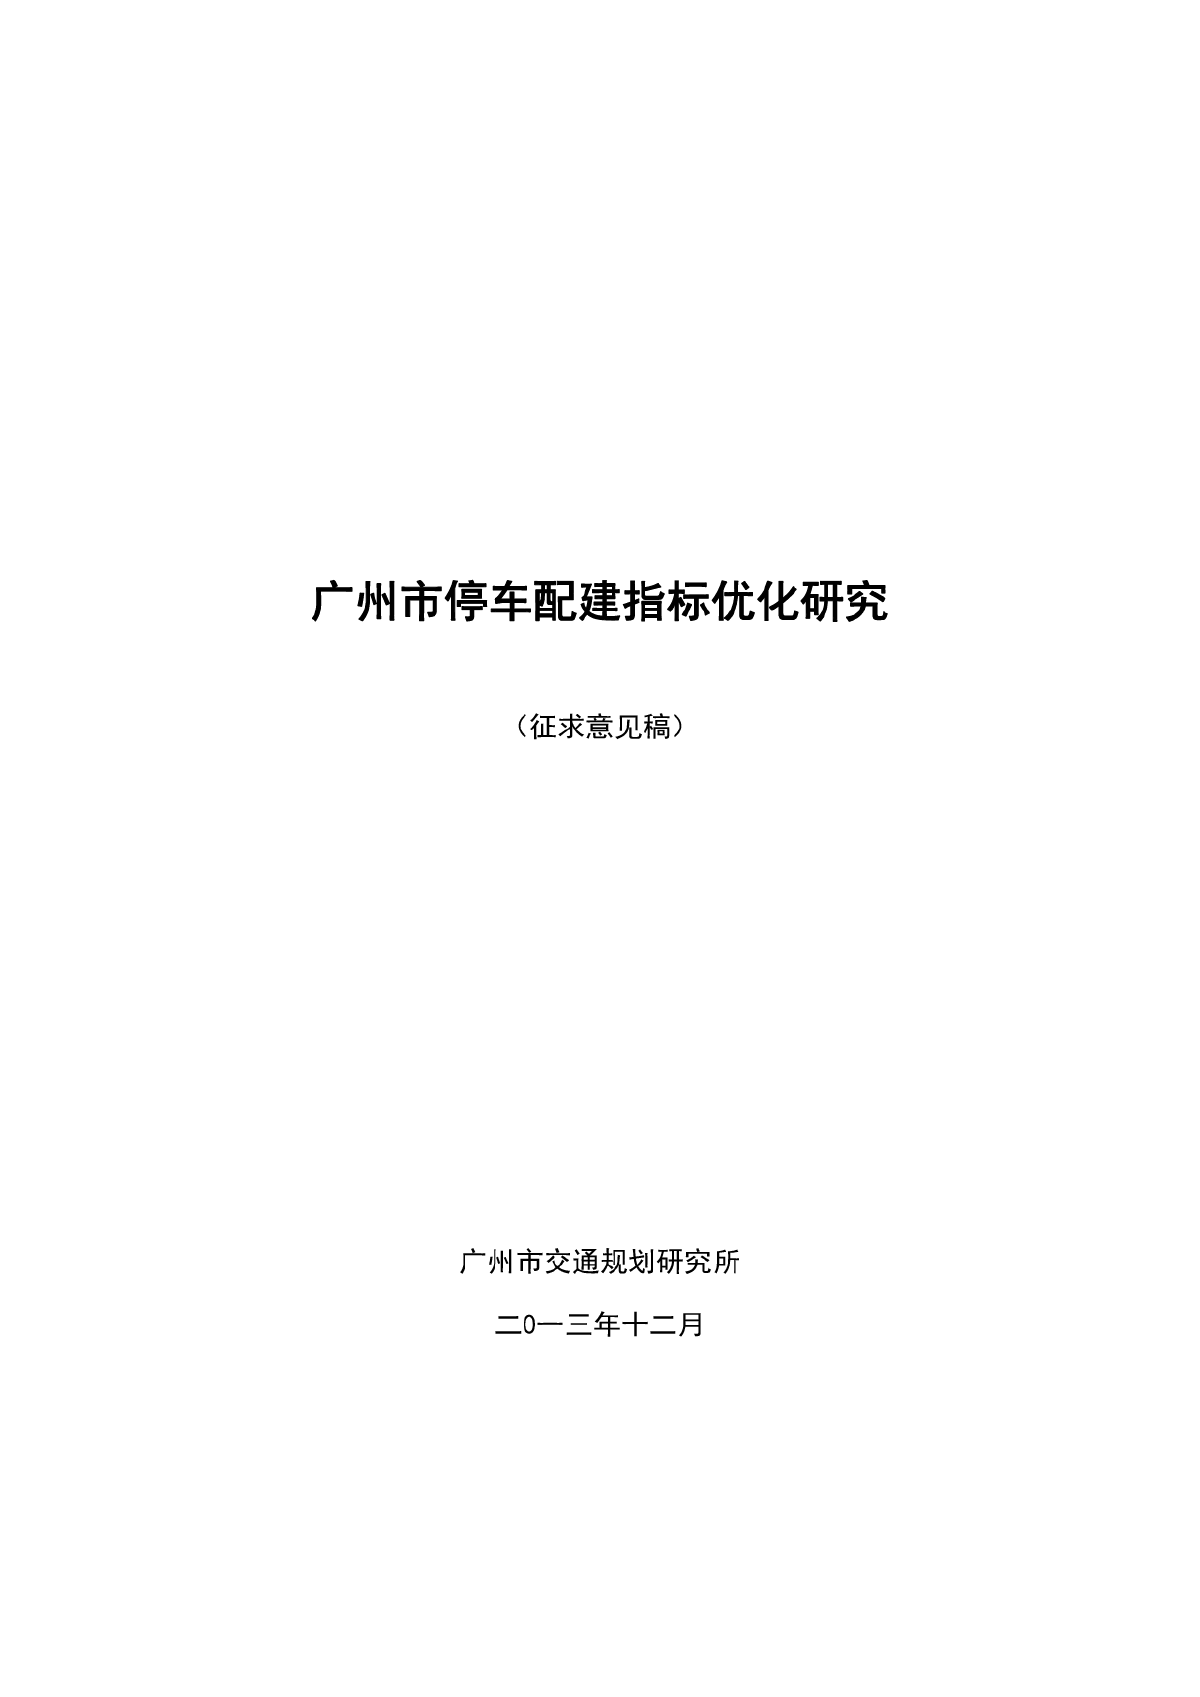 广州市停车配建指标优化研究（征求意见稿）.pdf-图一